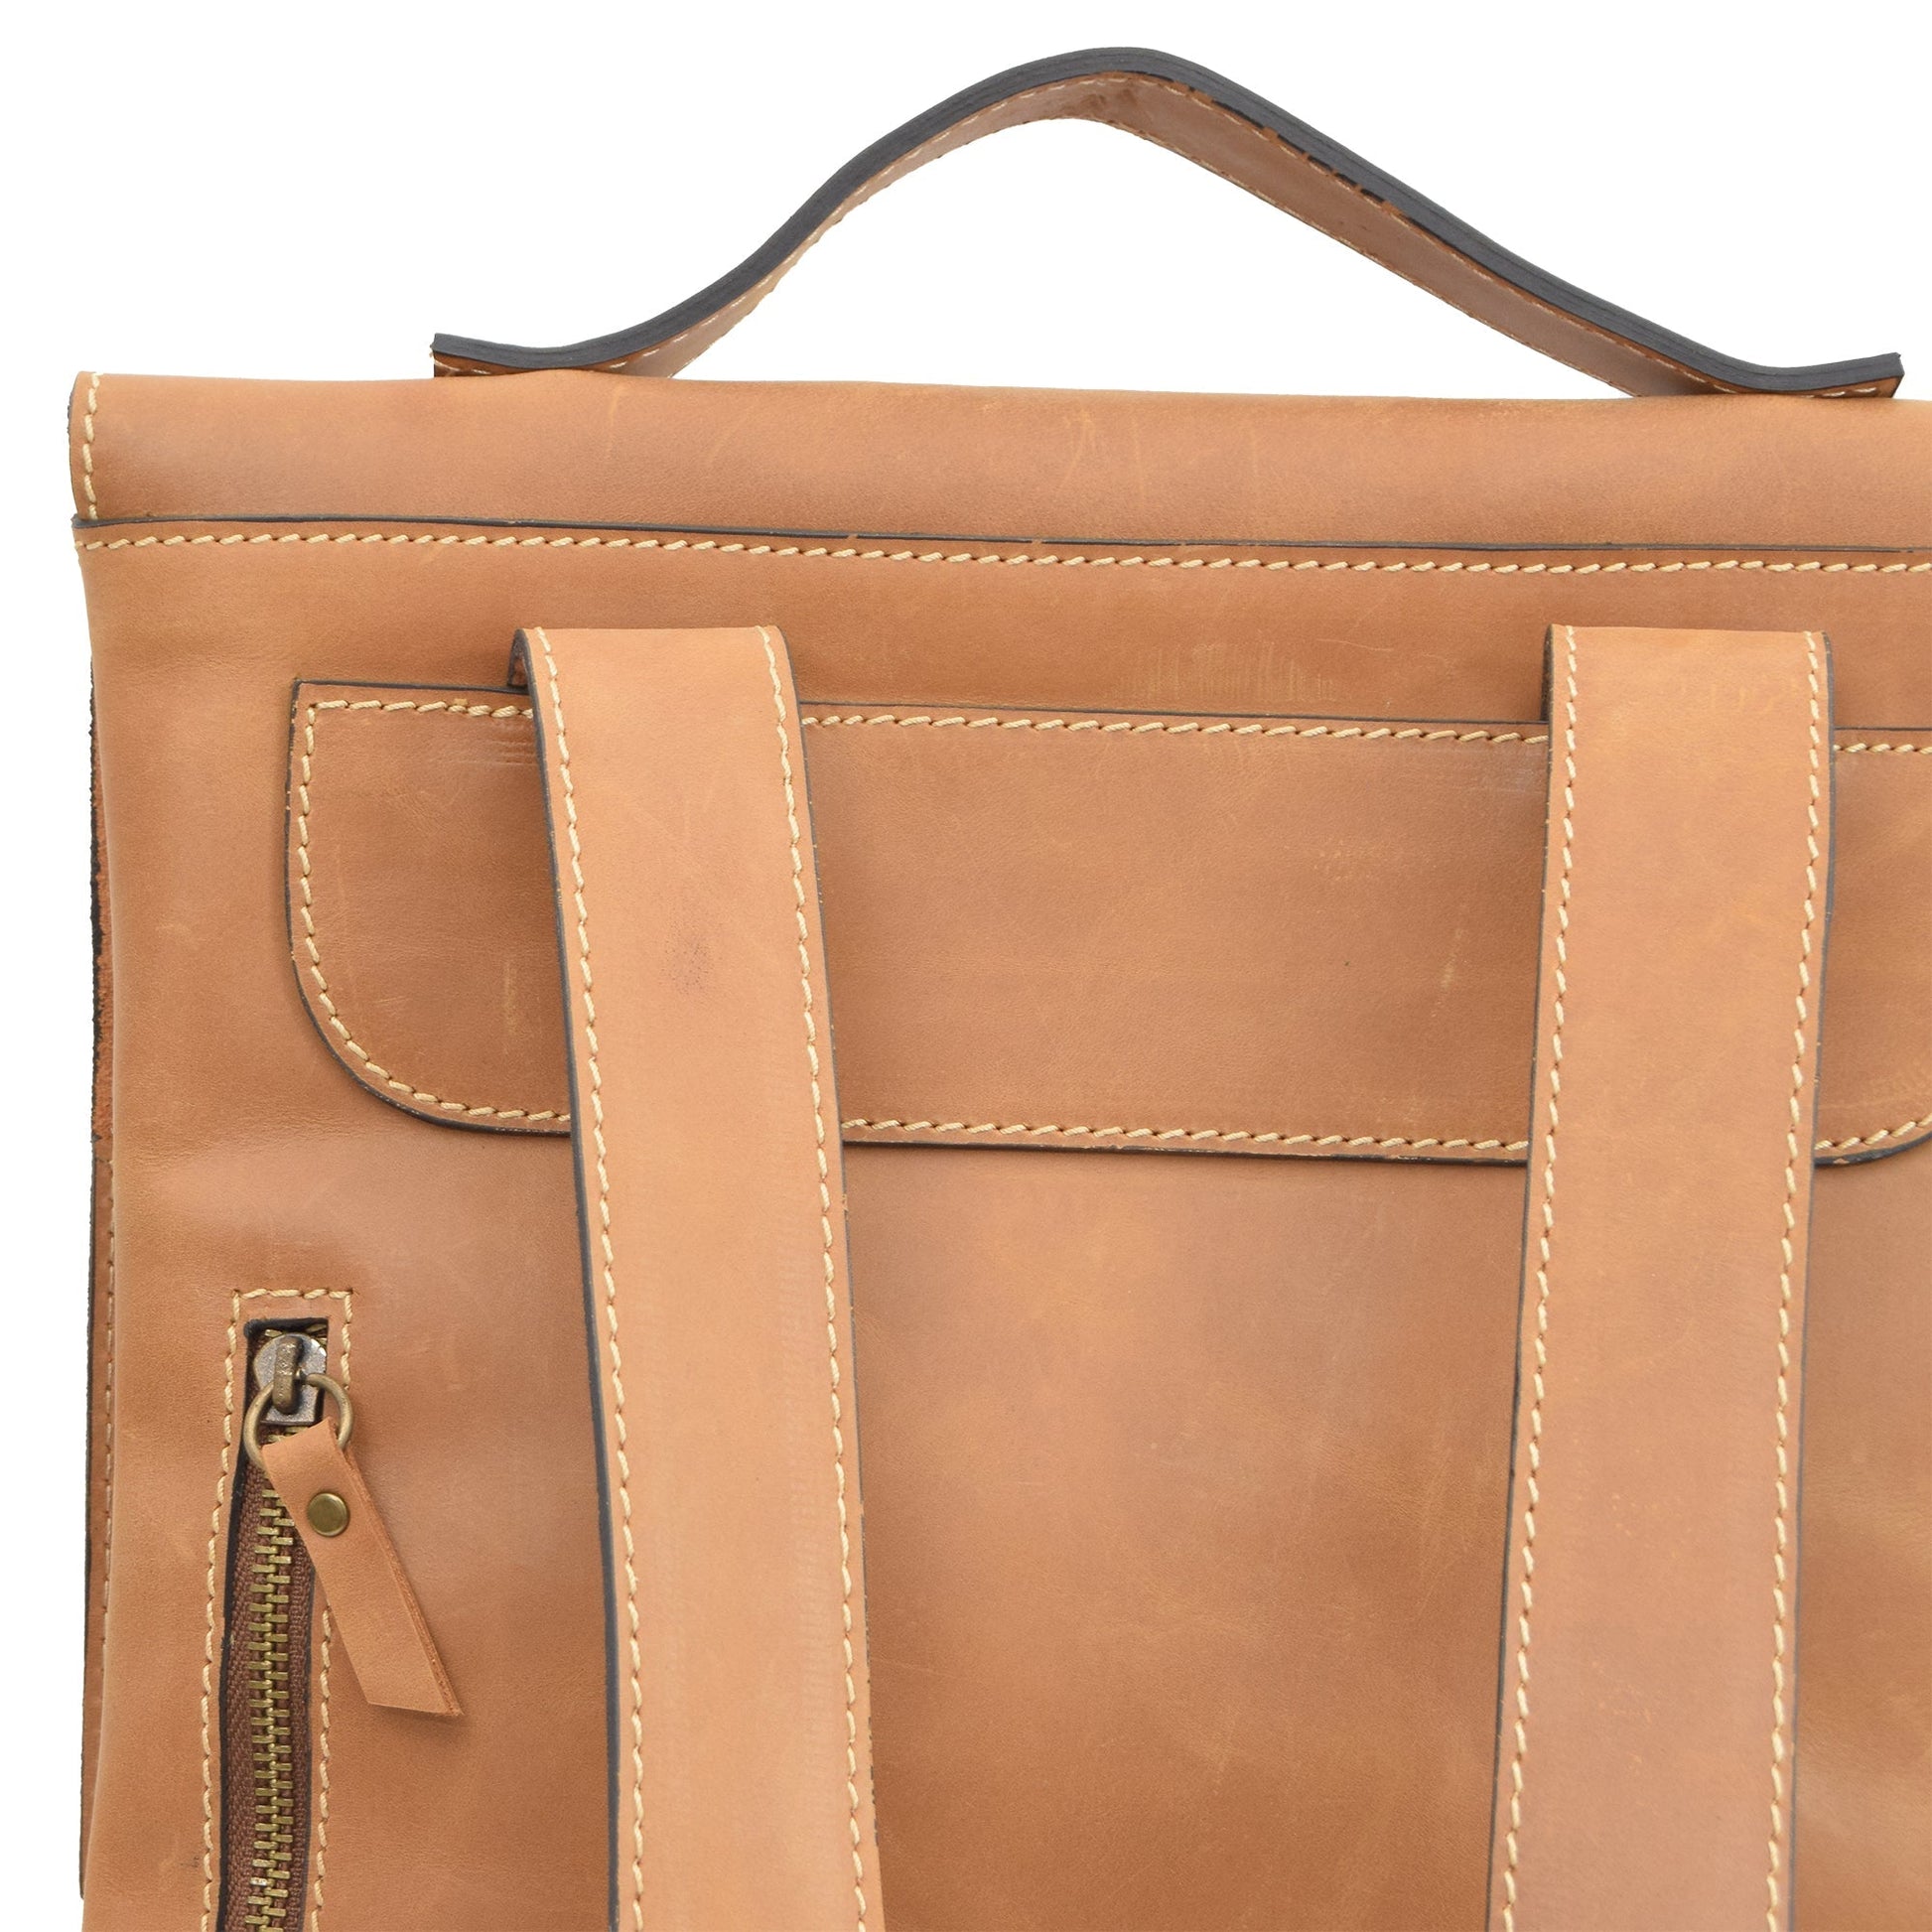 Ursa Tan Leather Backpacks - Zengoda Shop online from Artisan Brands